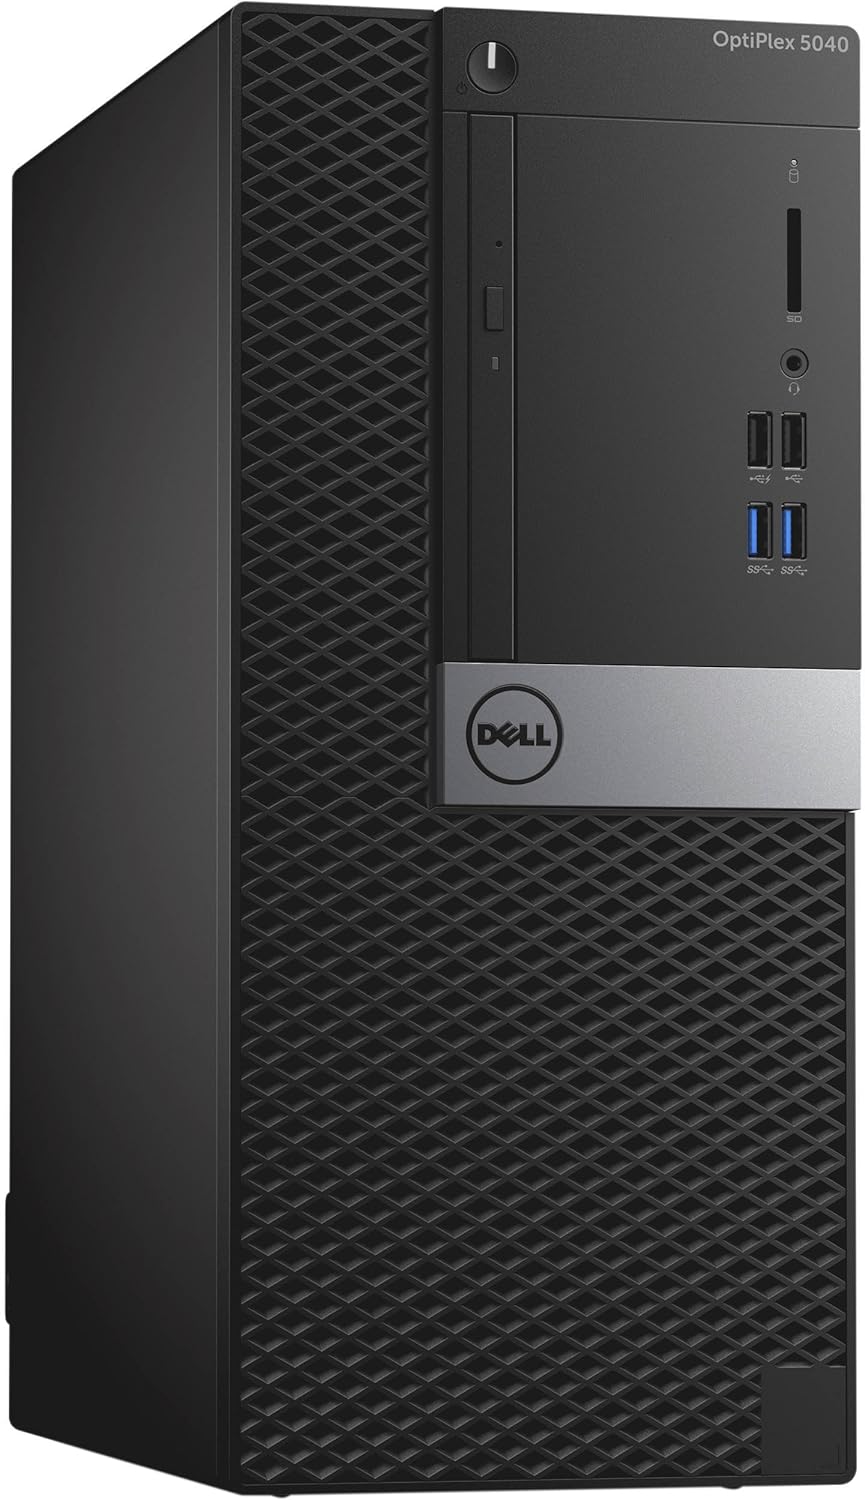 Dell Optiplex 5040 Mini PC Tower, Intel Core i5 6500, 500GB HDD, 8GB RAM, Intel HD Graphics, DOS- Black